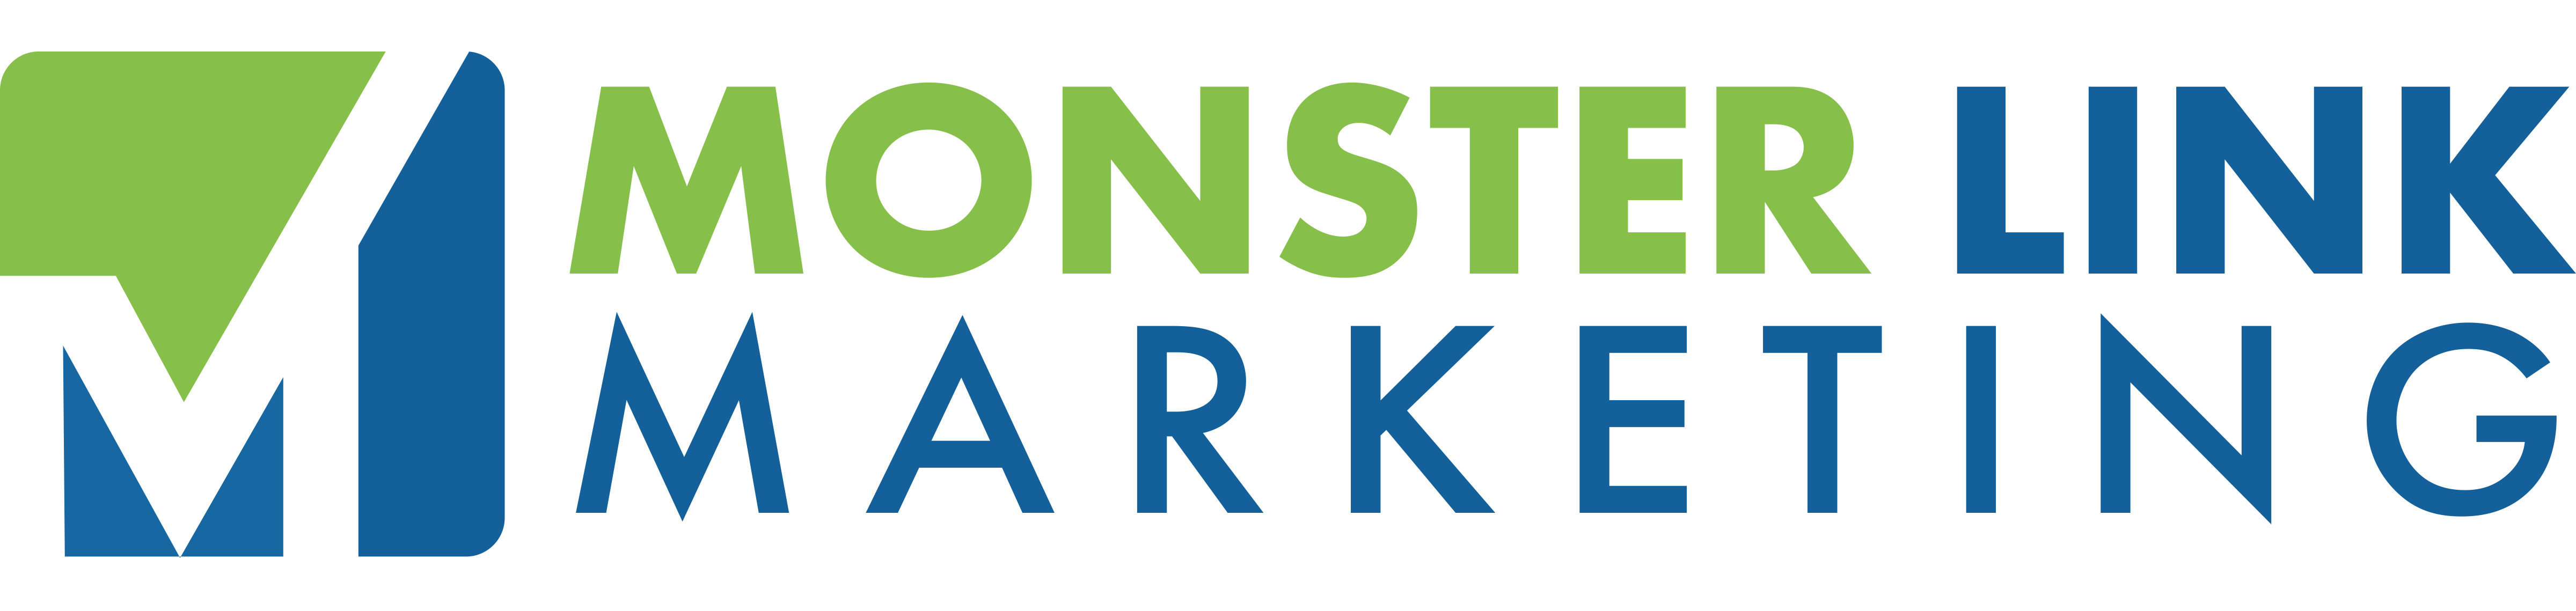 Monster Link Marketing Full Logo